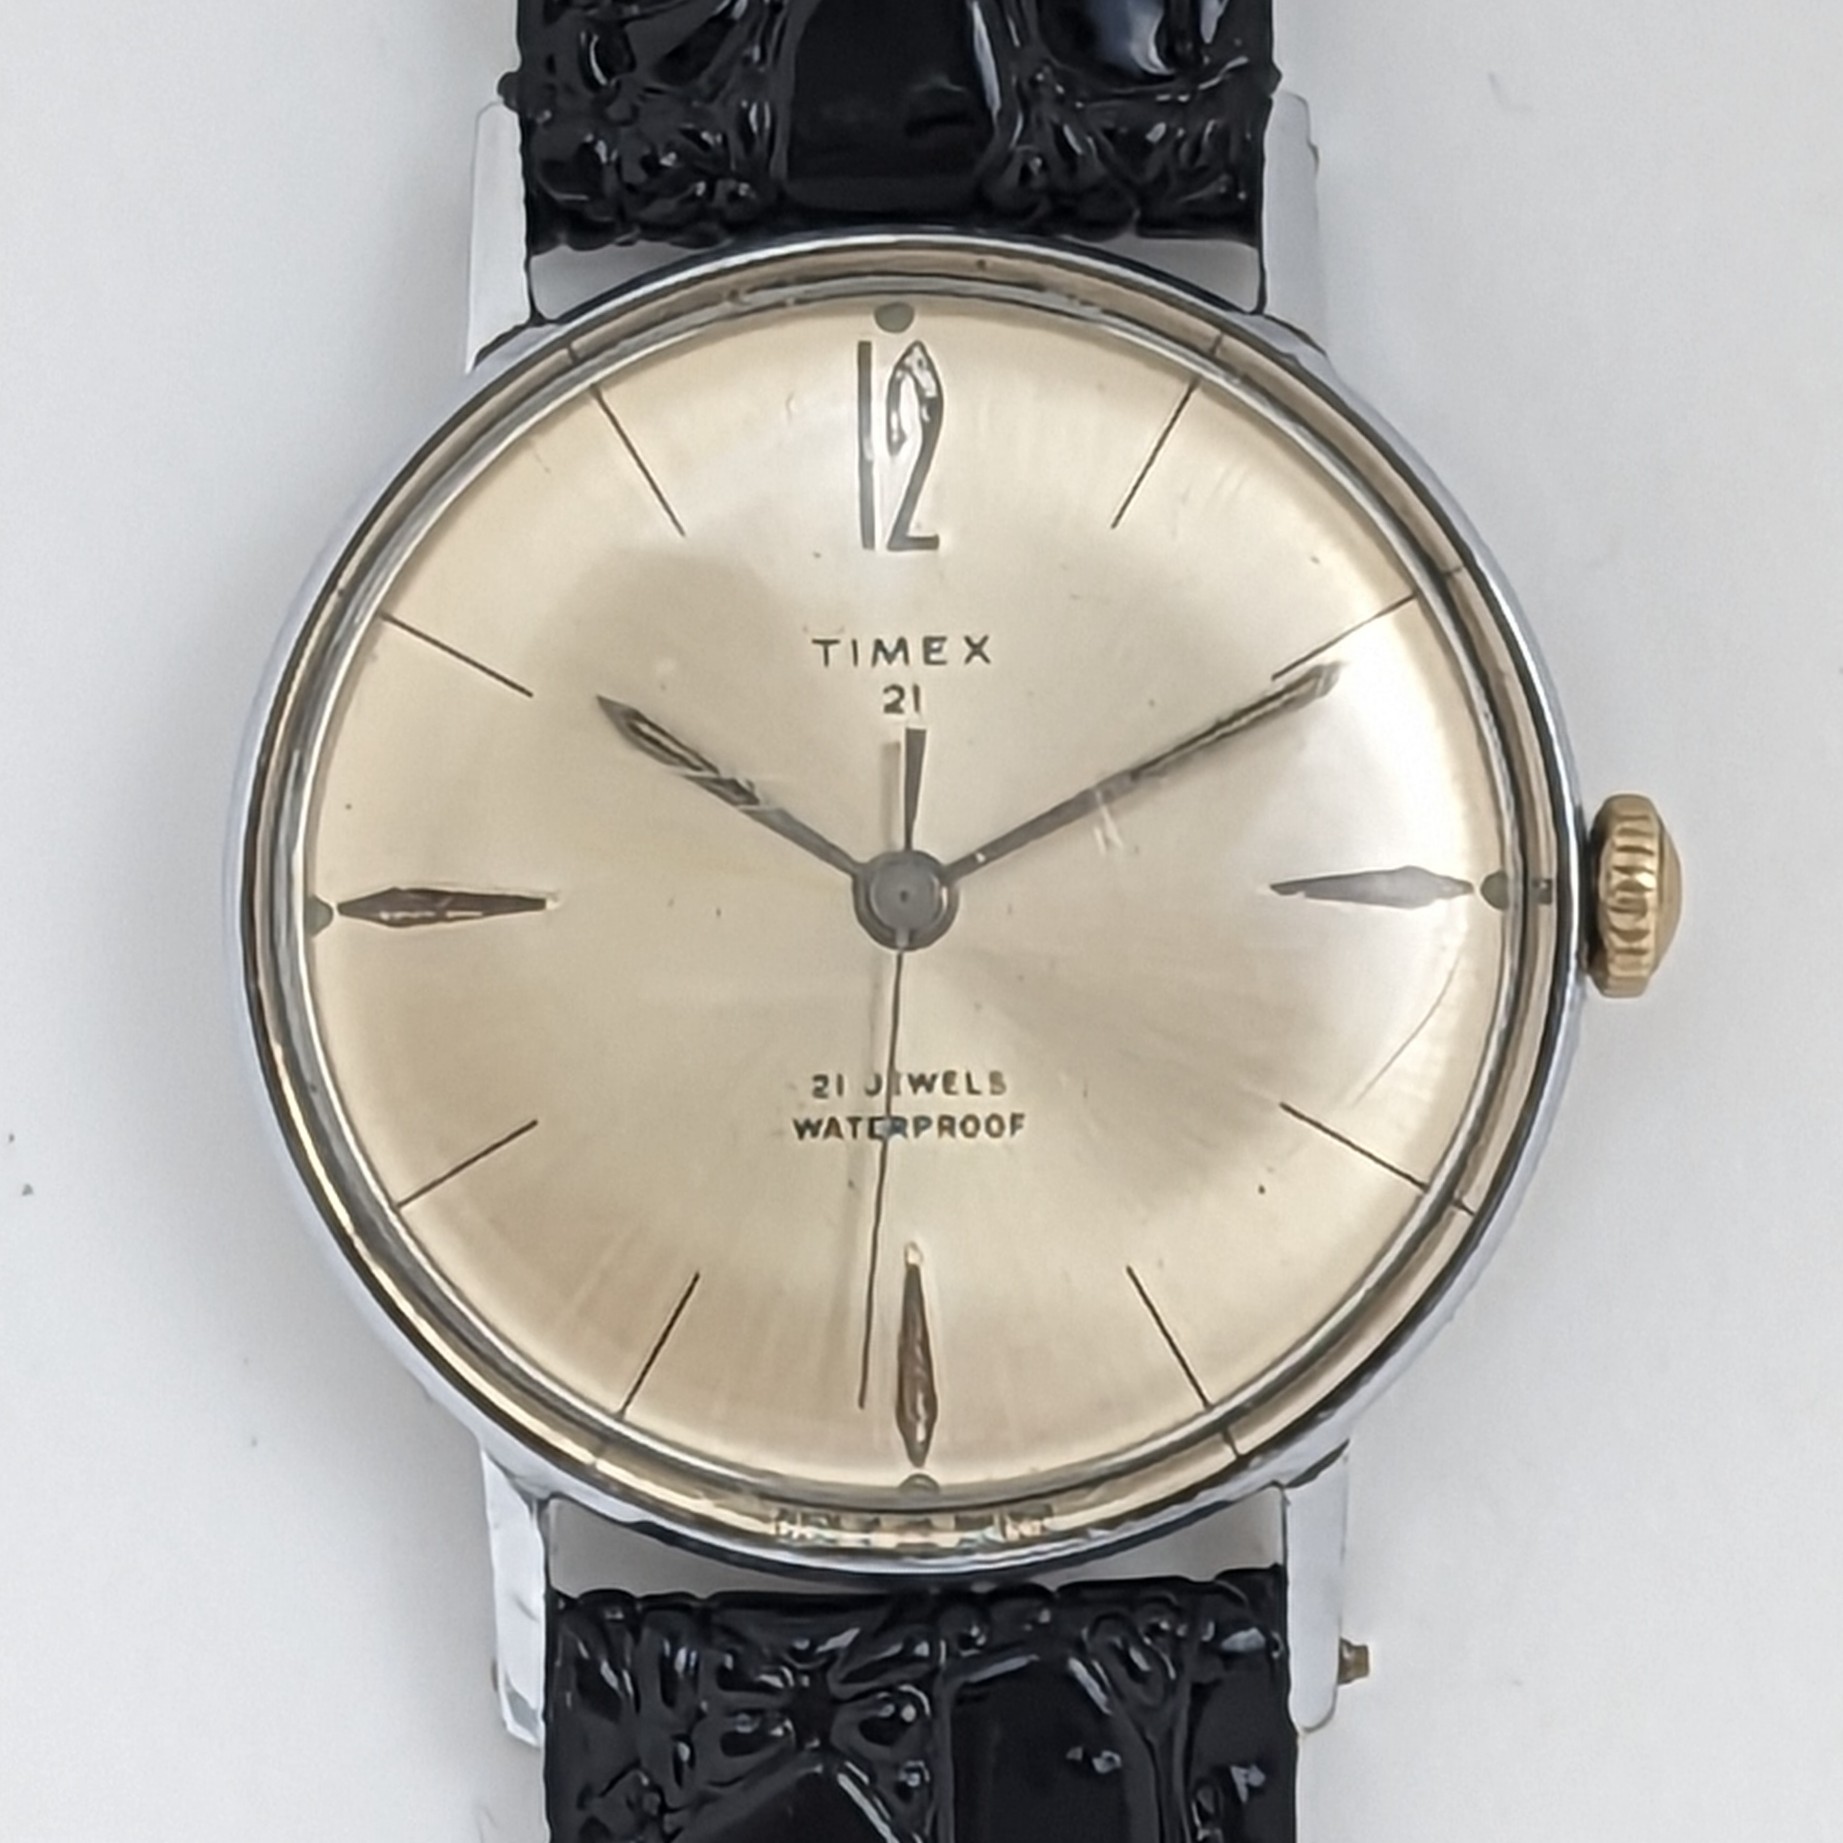 Timex 21 Jewel 6517 7266 [1966]